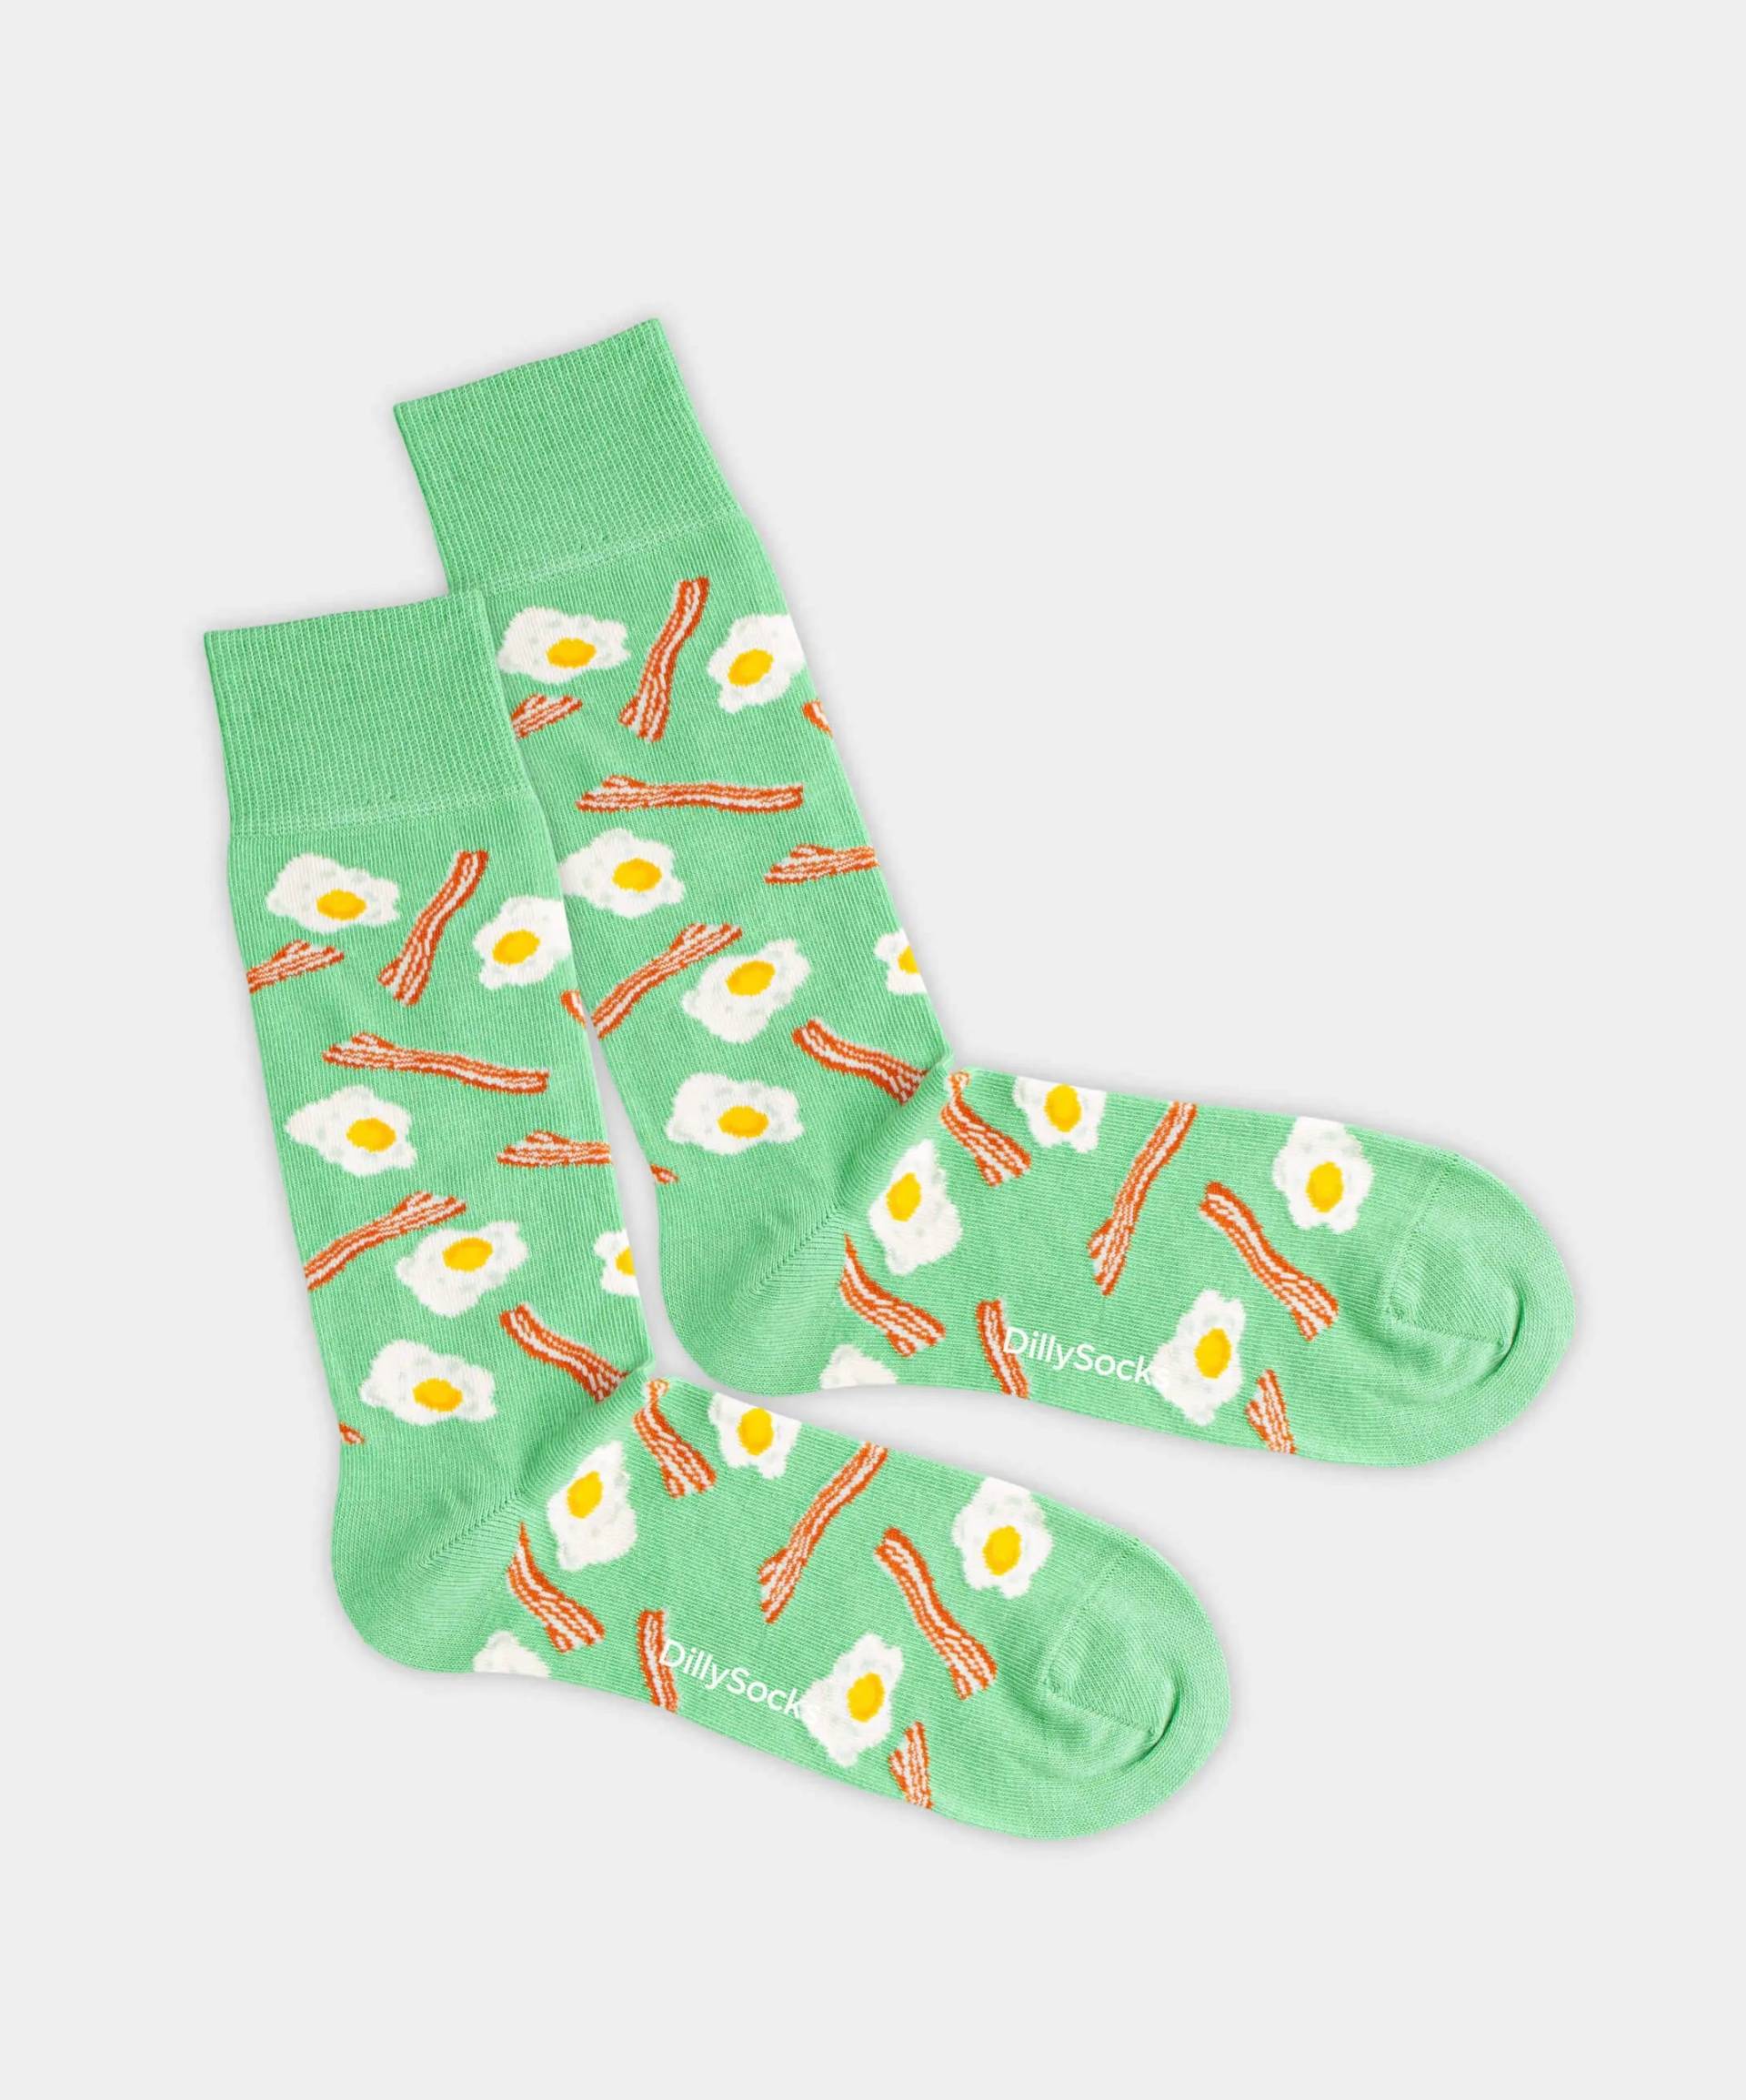 - Socken in Grün mit Essen Motiv/Muster von DillySocks